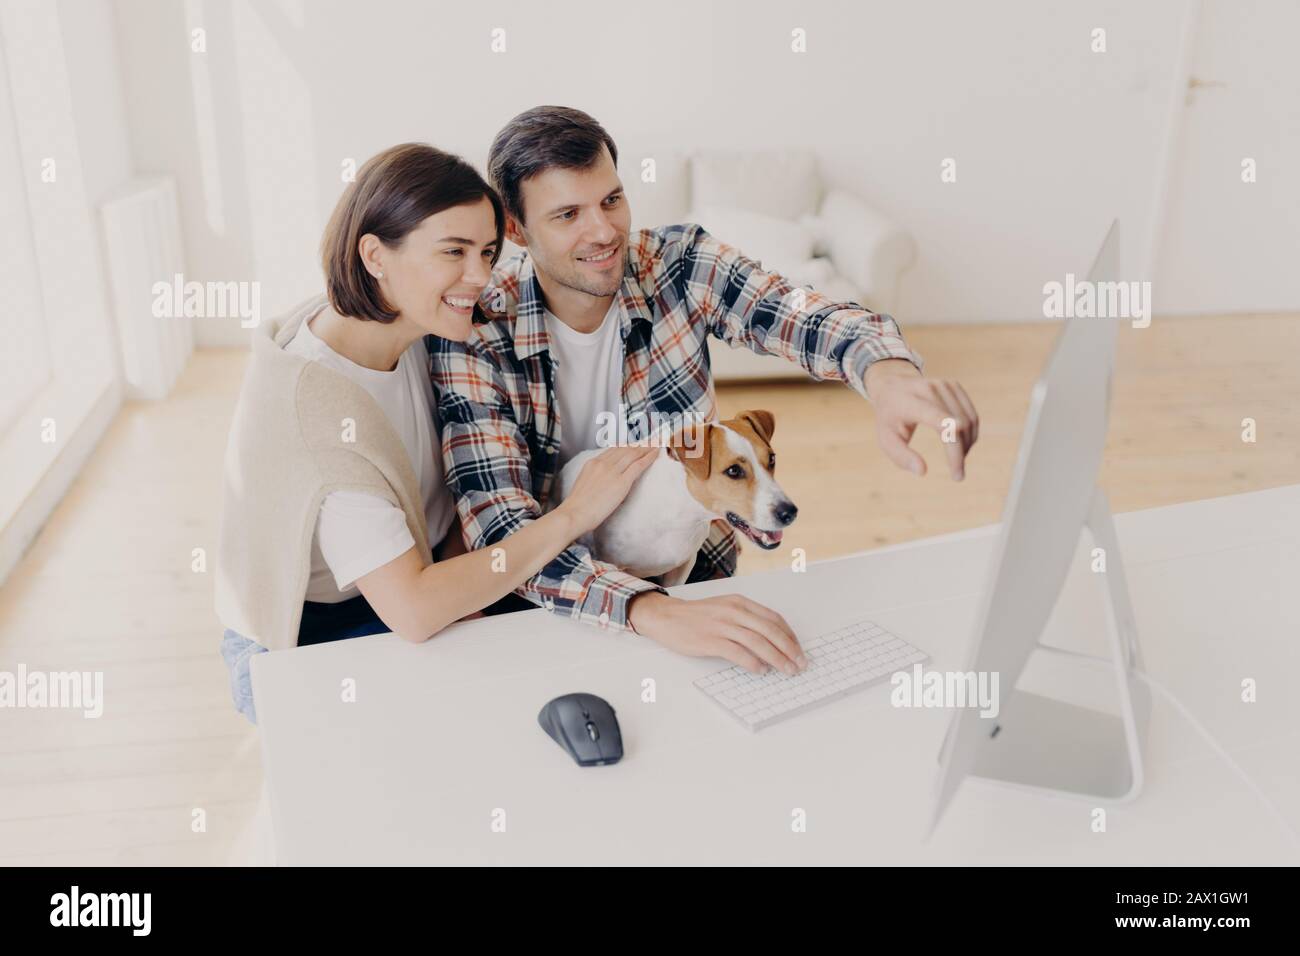 Überfreute Frau und Mann haben fröhliche Blicke, schauen sich Online-Filme zuhause an, spielen mit Punkt, sitzen am weißen Tisch, suchen Informationen über wifi, gekleidet Stockfoto